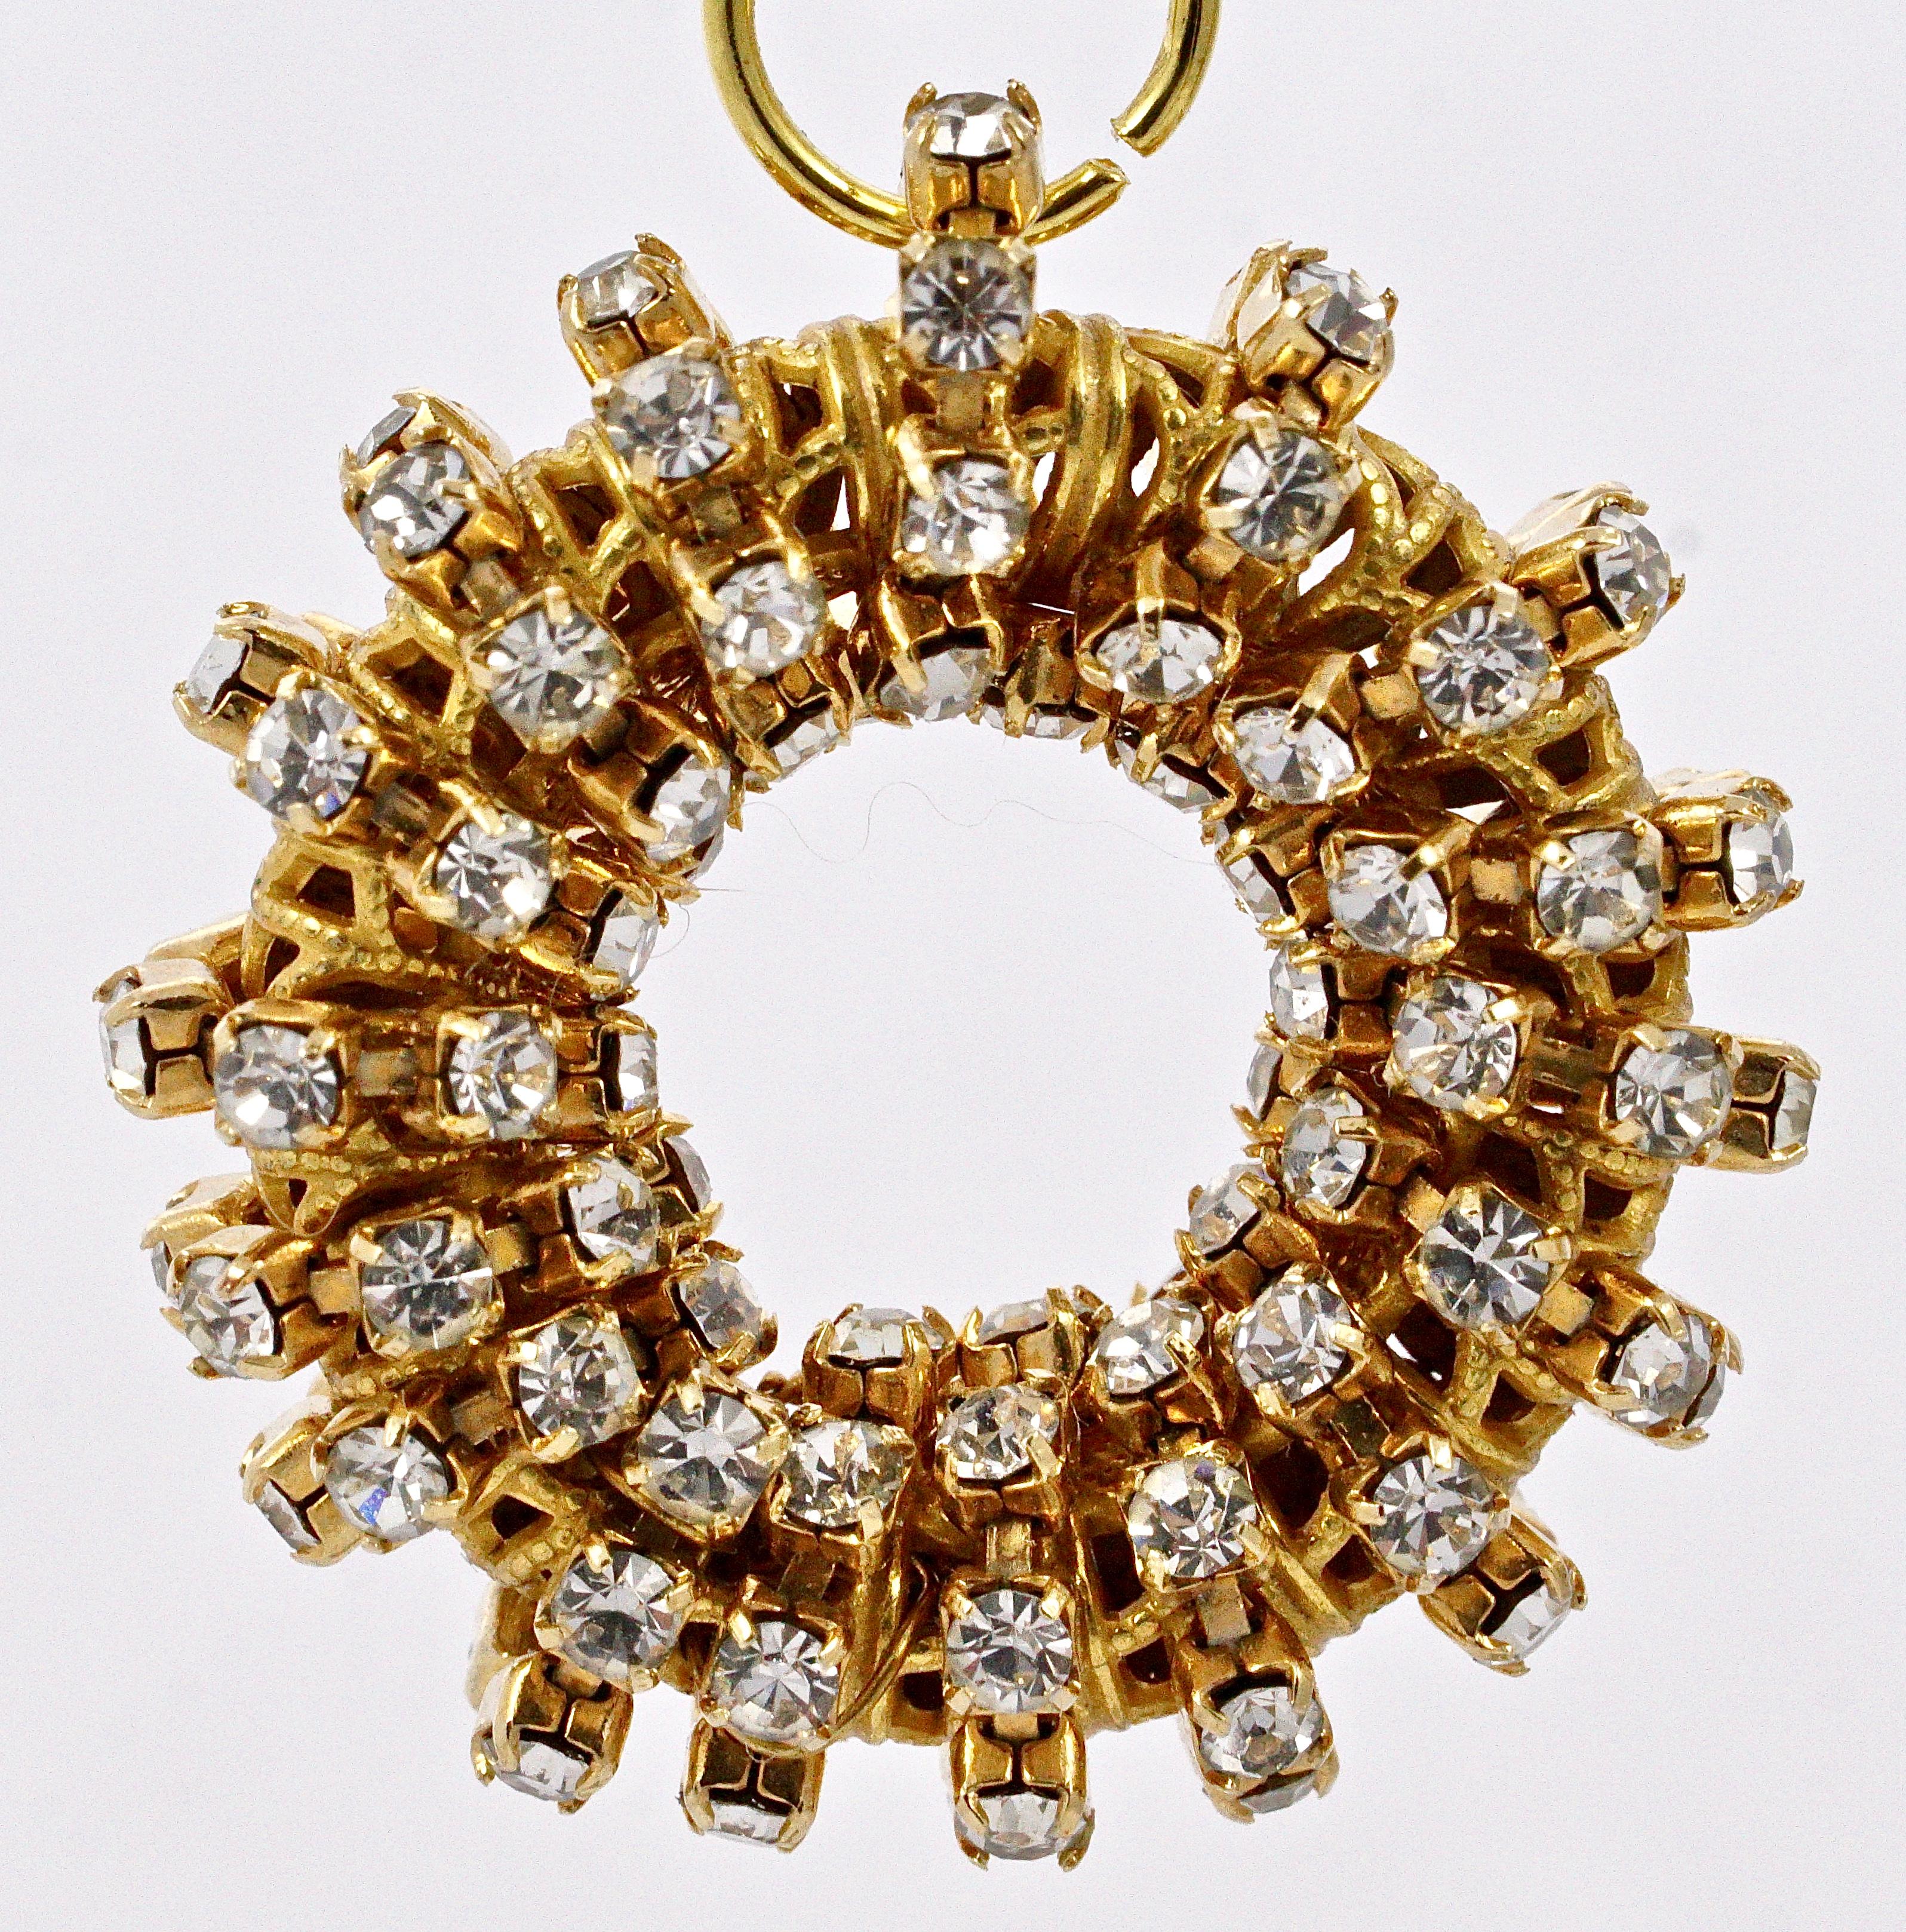 
Boucles d'oreilles à clip Miriam Haskell en ton or avec un anneau doré avec des rangées de strass clairs en relief, suspendues à un grand strass facetté serti, elles sont reliées par un anneau de saut (qui n'est pas d'origine). Longueur 5cm / 1.97